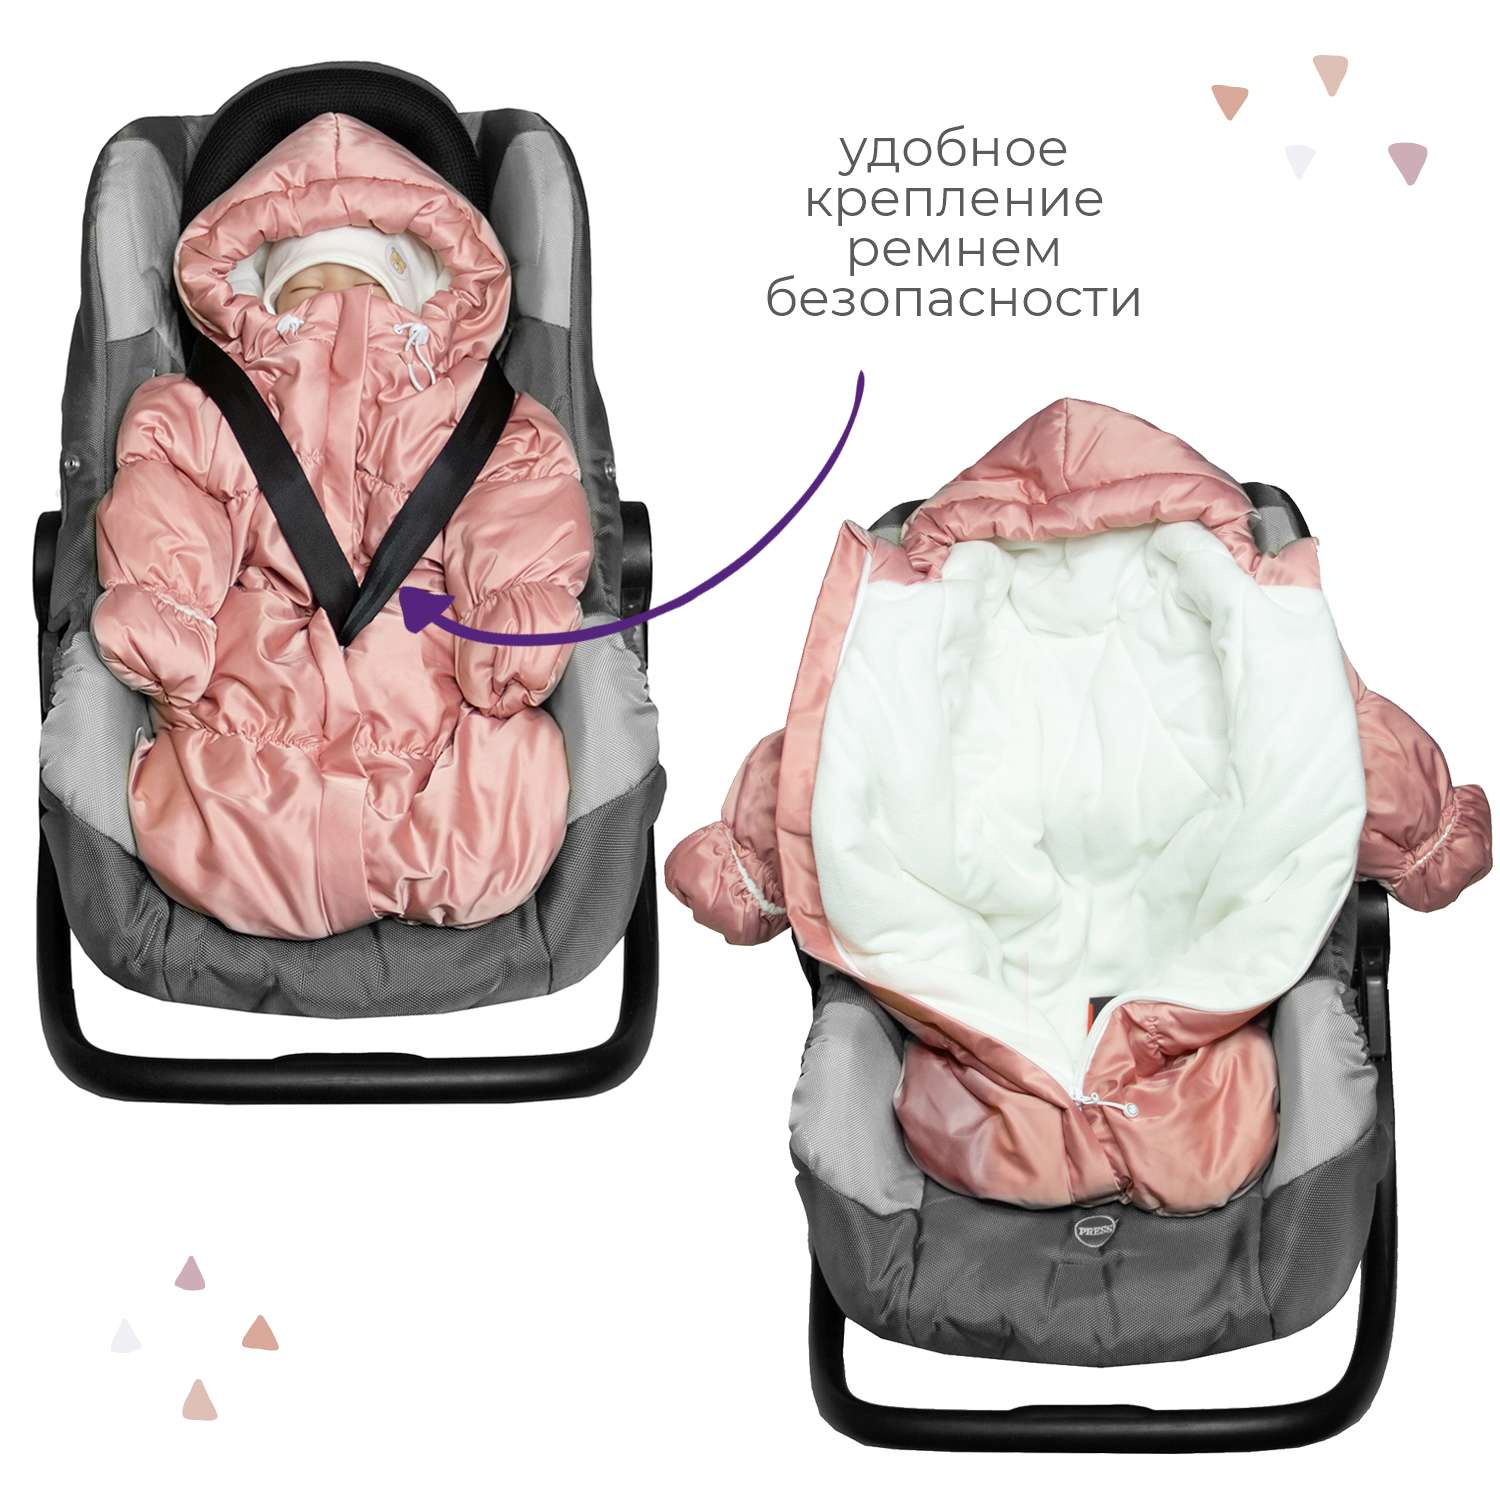 Конверт для новорожденного inlovery на выписку/в коляску «Маршмеллоу» розовый - фото 4